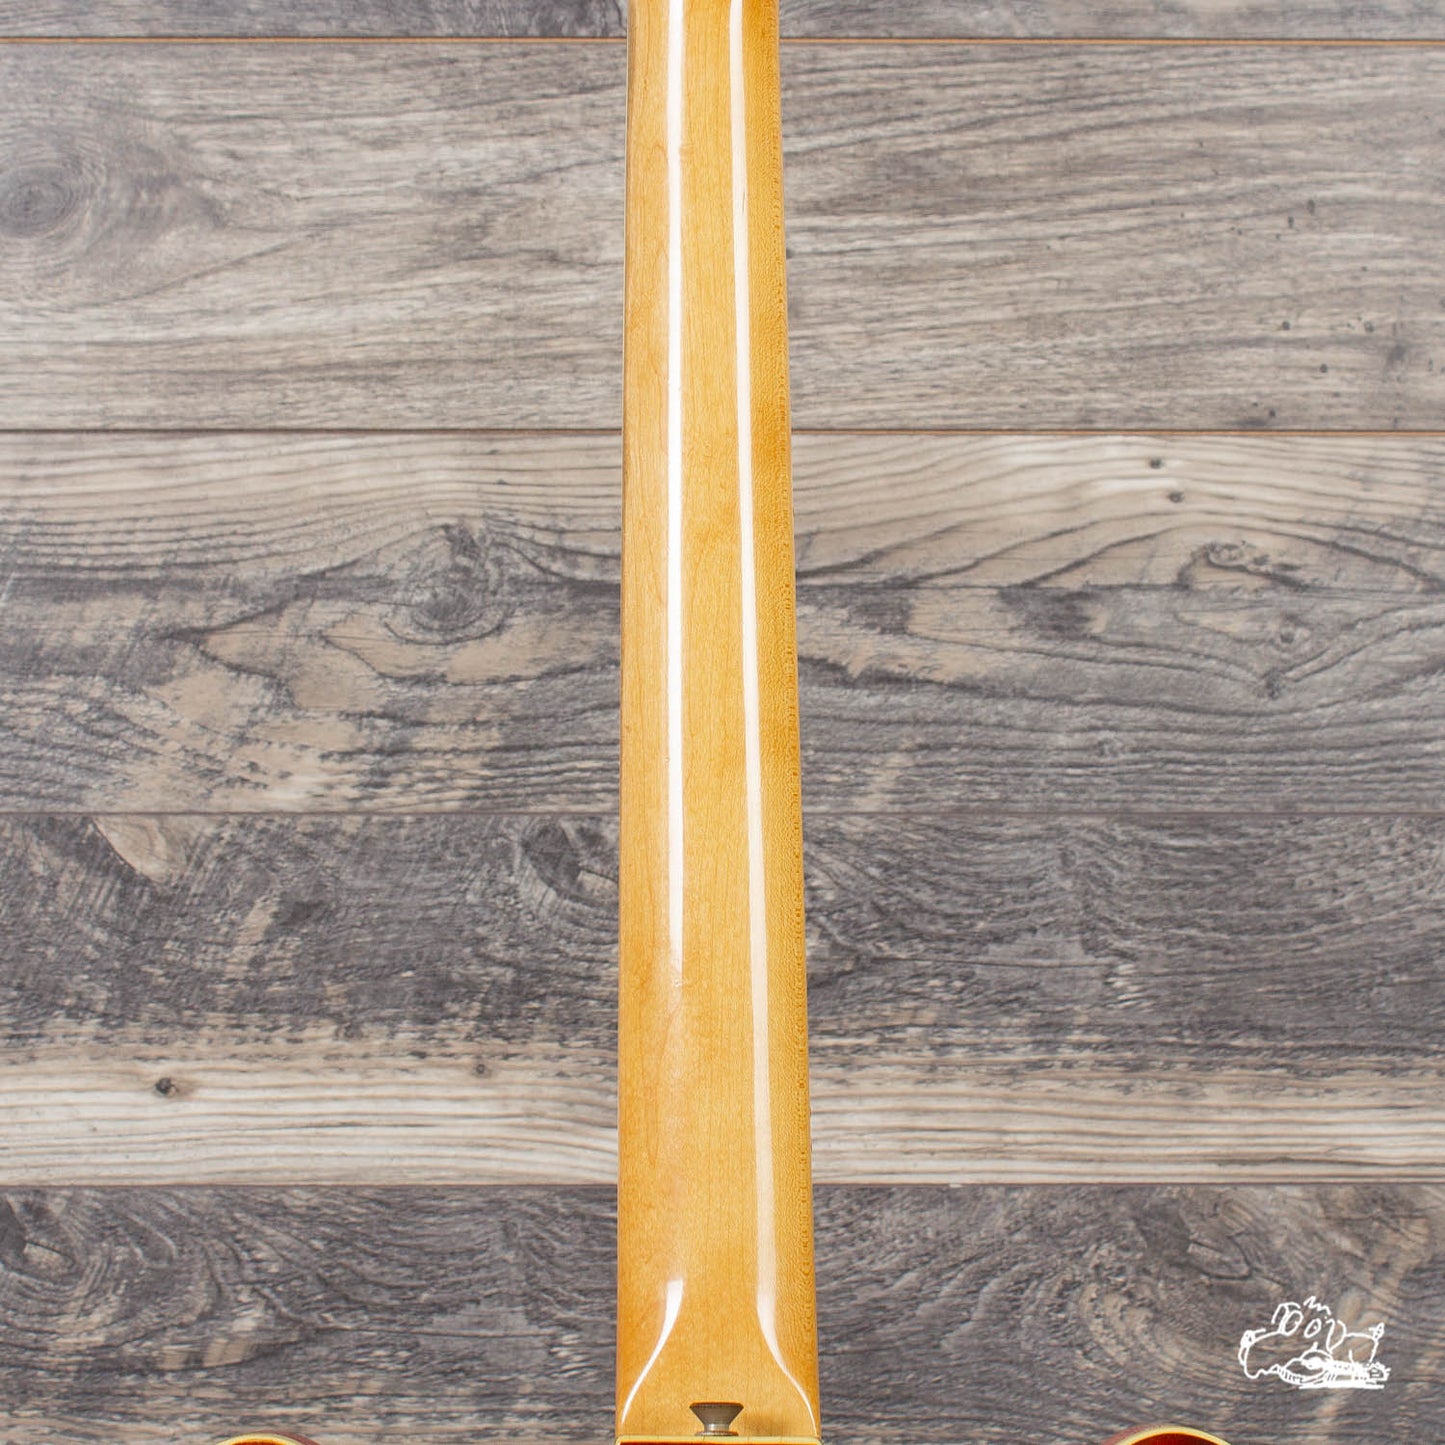 1974 Fender Coronado II